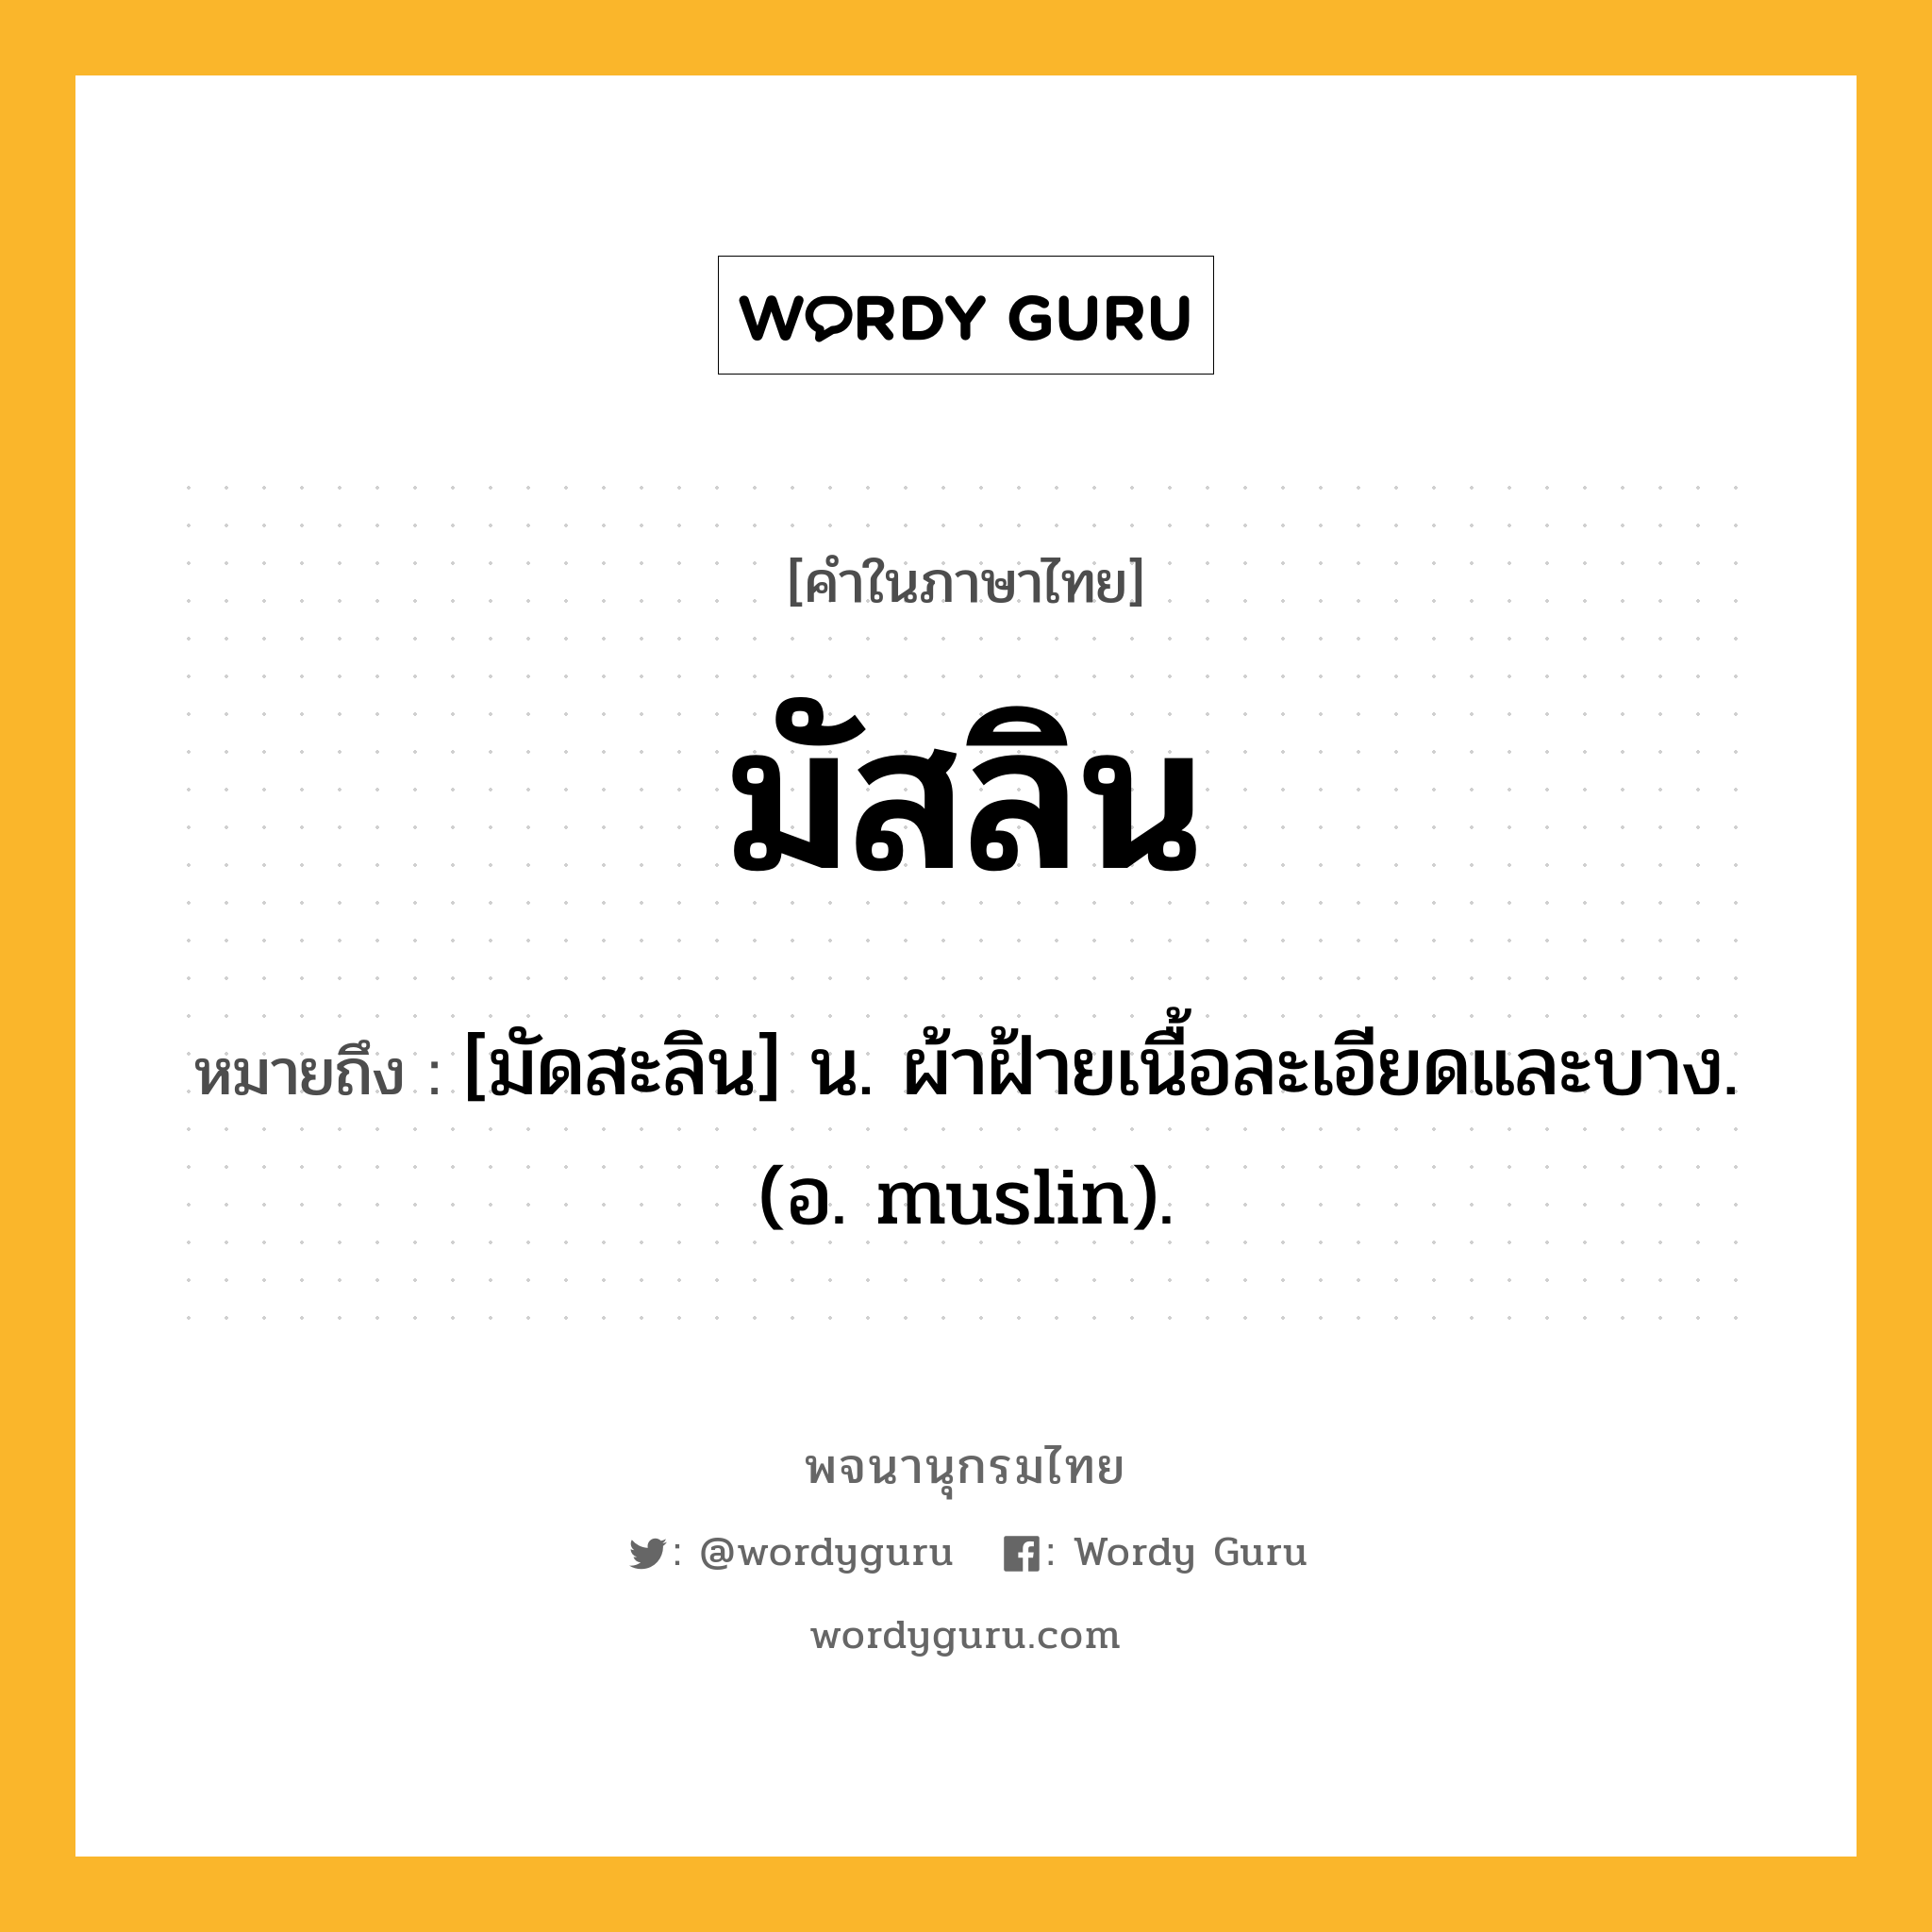 มัสลิน หมายถึงอะไร?, คำในภาษาไทย มัสลิน หมายถึง [มัดสะลิน] น. ผ้าฝ้ายเนื้อละเอียดและบาง. (อ. muslin).